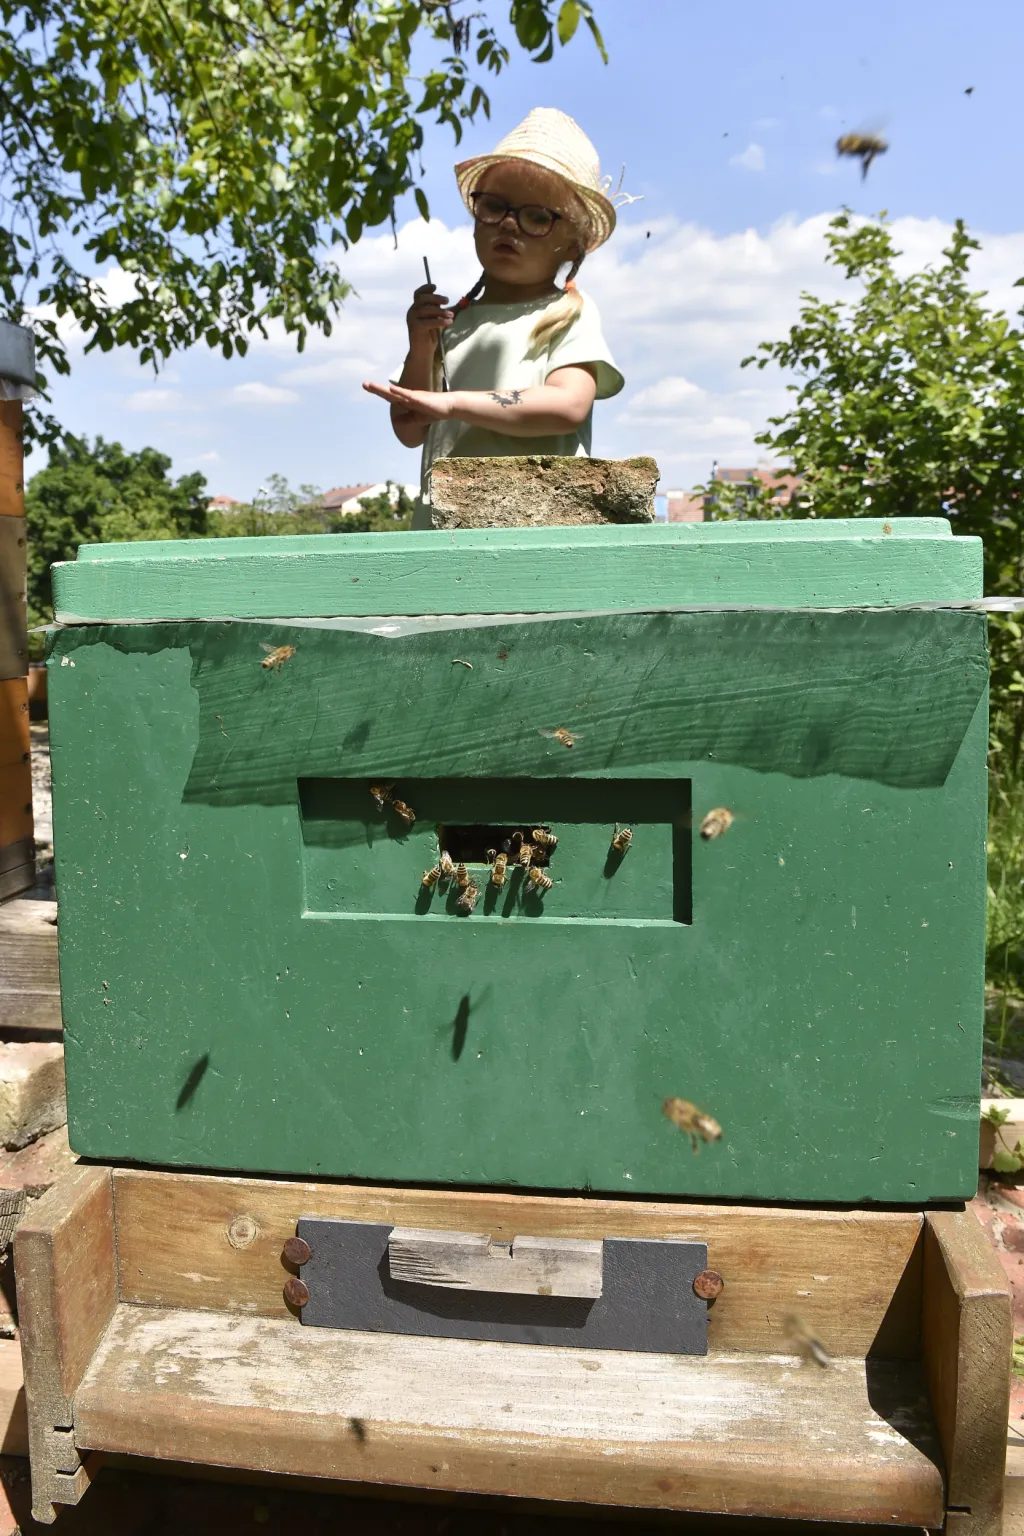 Česká republika patří k zemím s nejvyšší koncentrací na kilometr čtvereční. Vyšší koncentrace znamená vyšší rizika šíření včelích chorob. Situace u včel je, na rozdíl od jiných doma chovaných zvířat, o to složitější, že včely létají běžně do vzdálenosti až tří kilometrů, a vzájemný kontakt včelstev různých chovatelů je tak značný